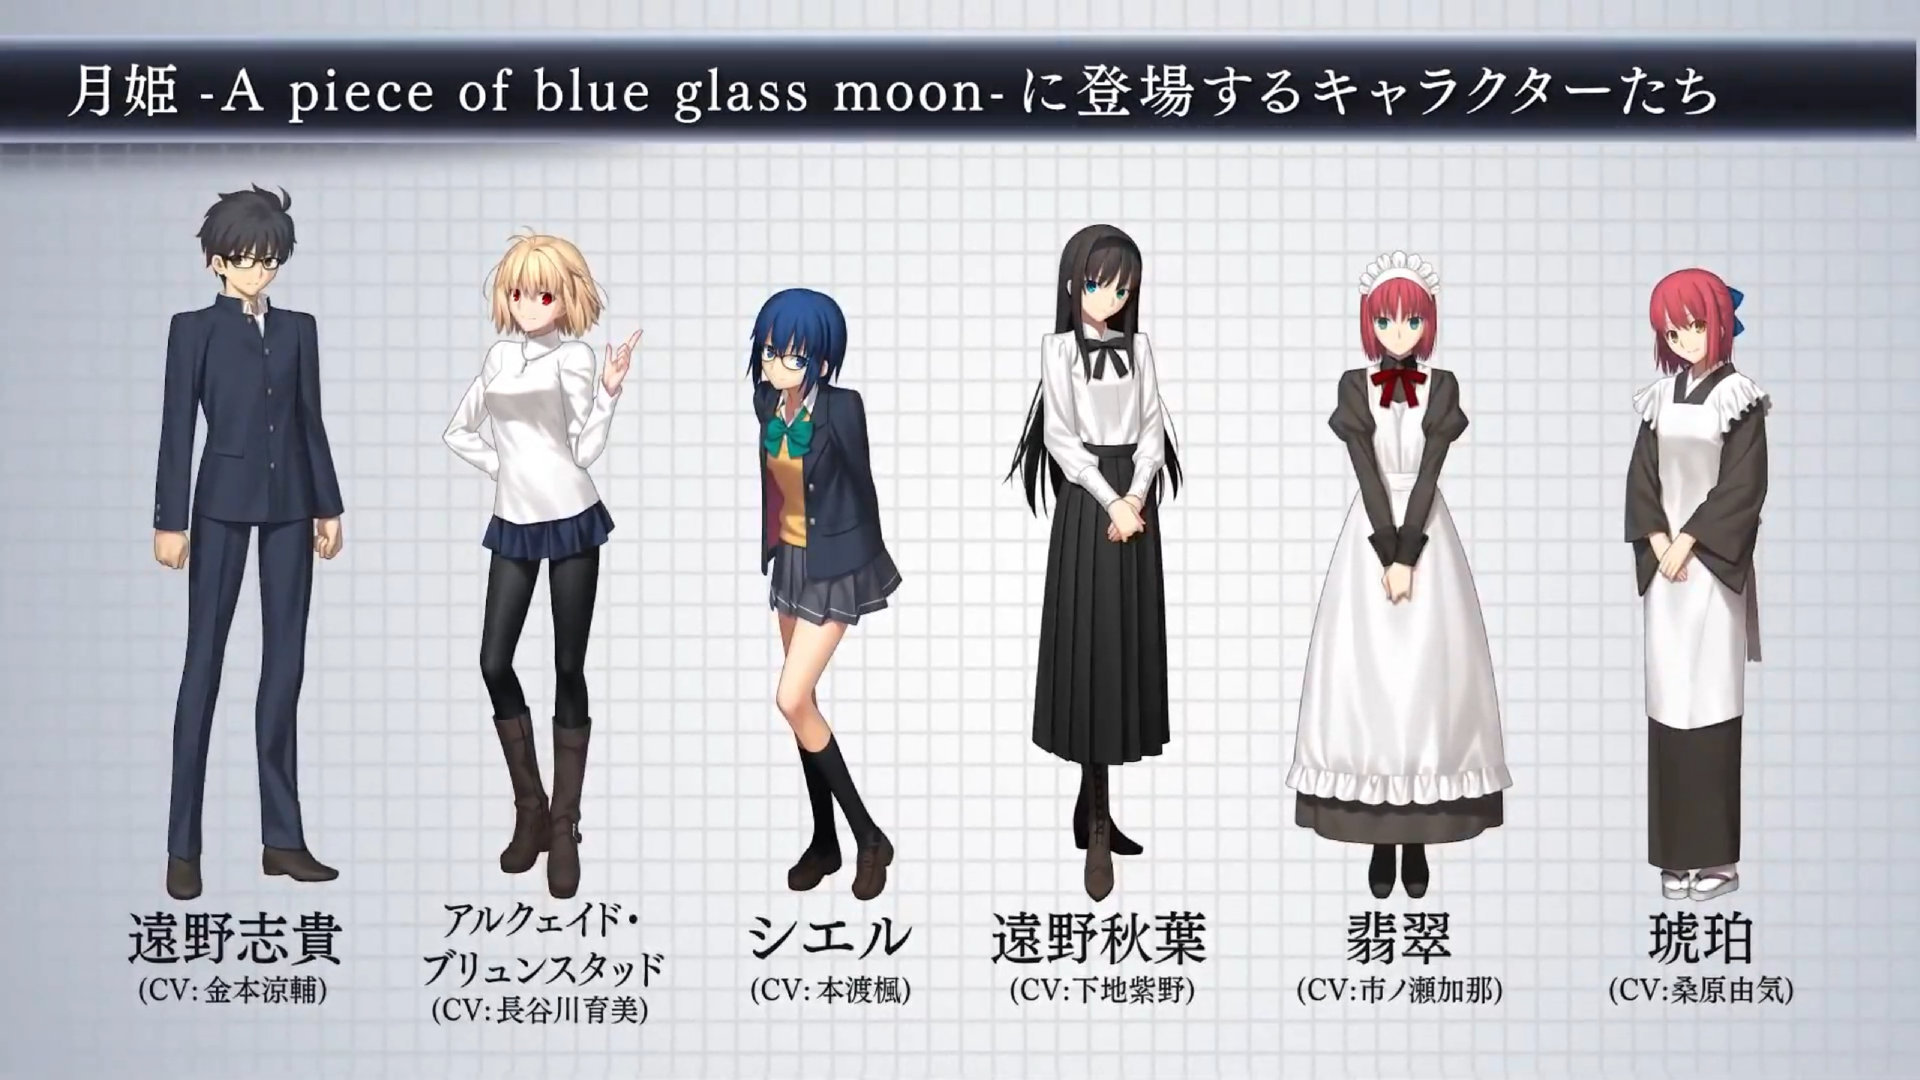 月姬重制版「月姫 -A piece of blue glass moon-」第2弹PV公开，将于2021年8月26日发售